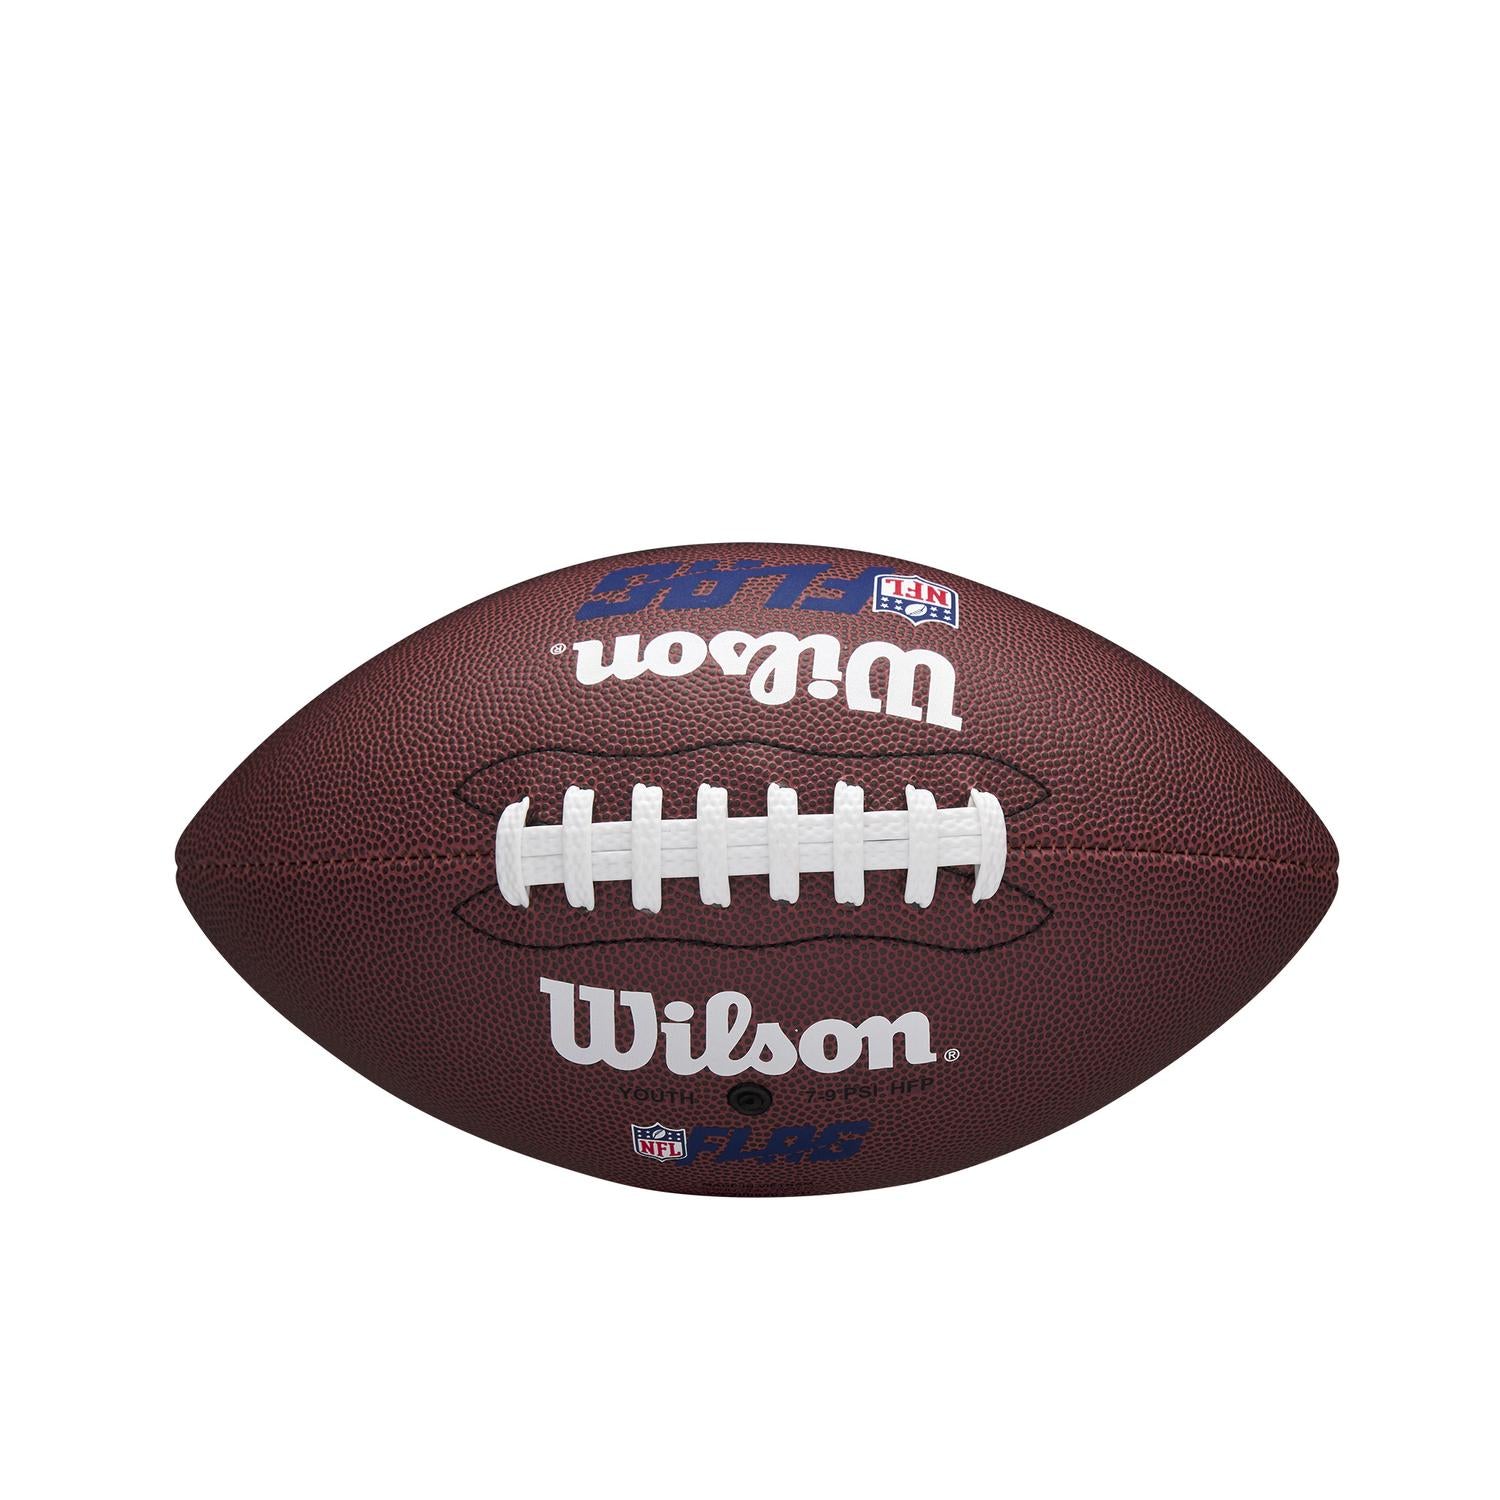 Balón NFL Flag Juvenil